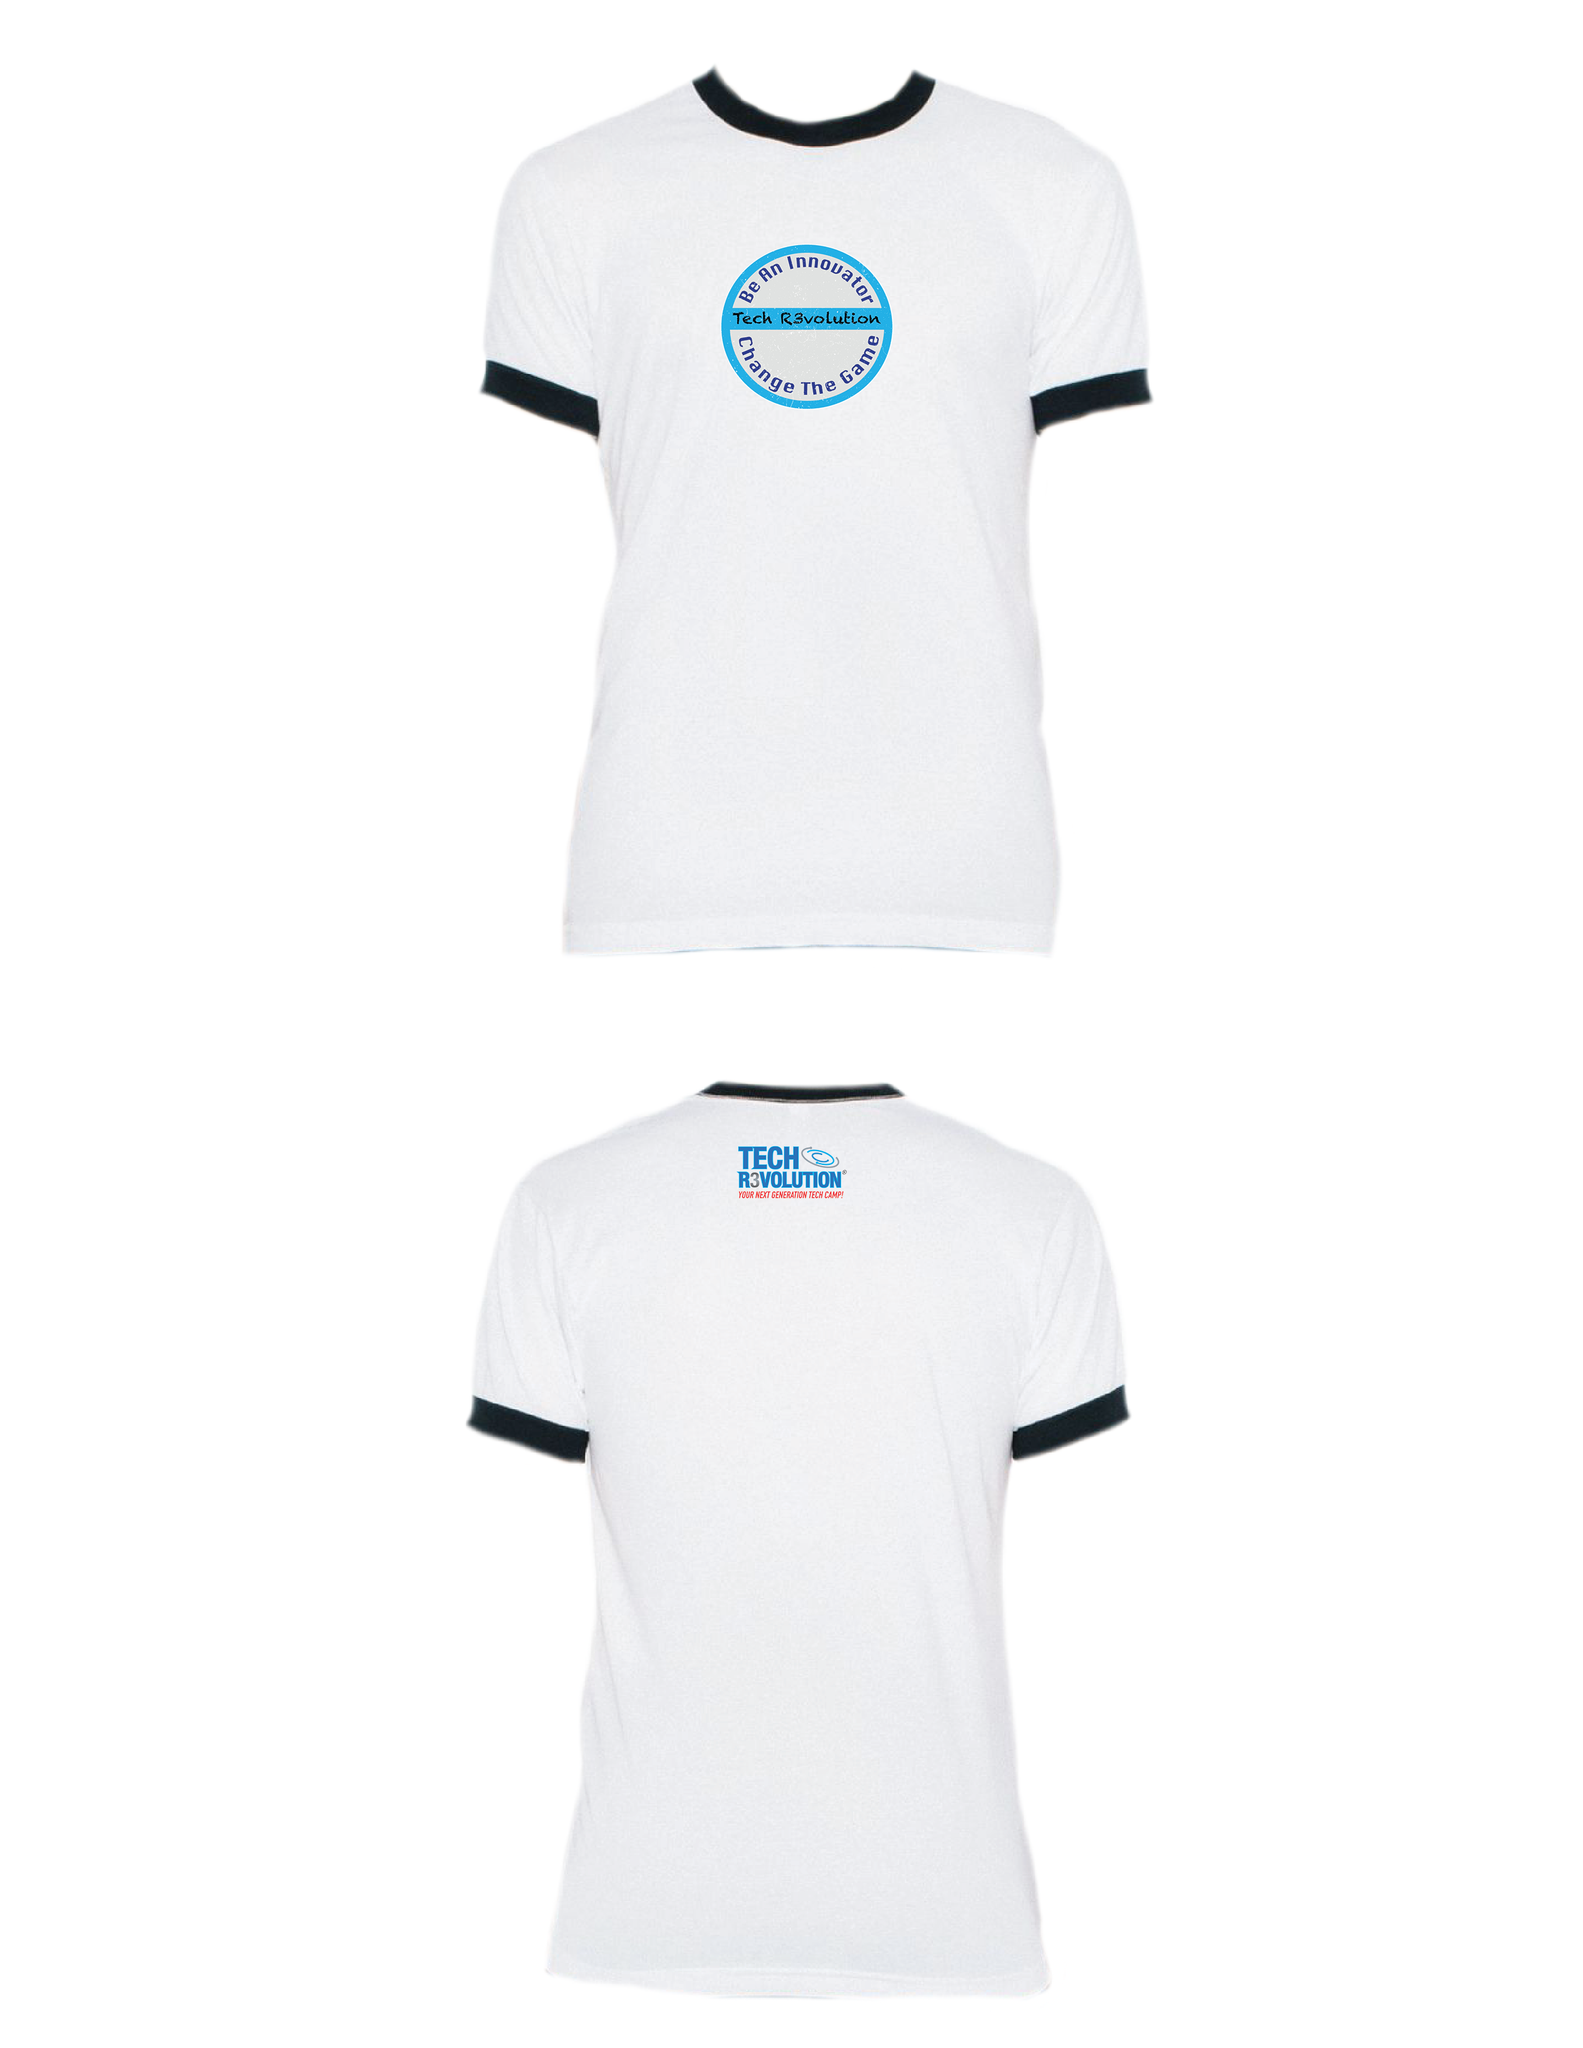 Tech Revolution Ringer T-Shirt